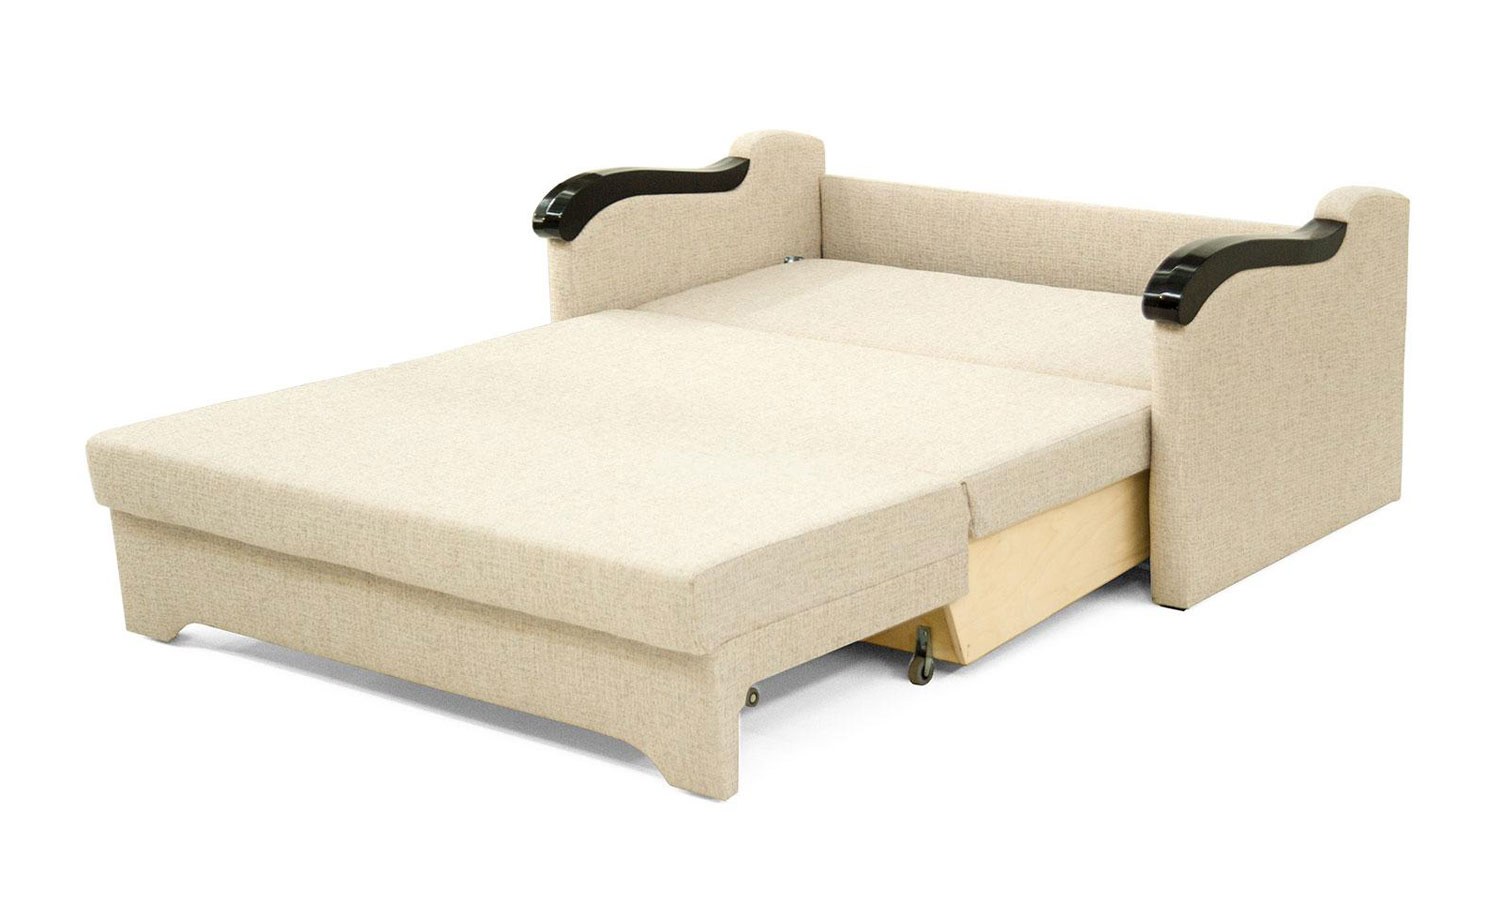 Купить выкатной диван в спб от производителя. Выкатной диван Вилар 1,2. Диван выкатной Гудвин МБ 3 100.